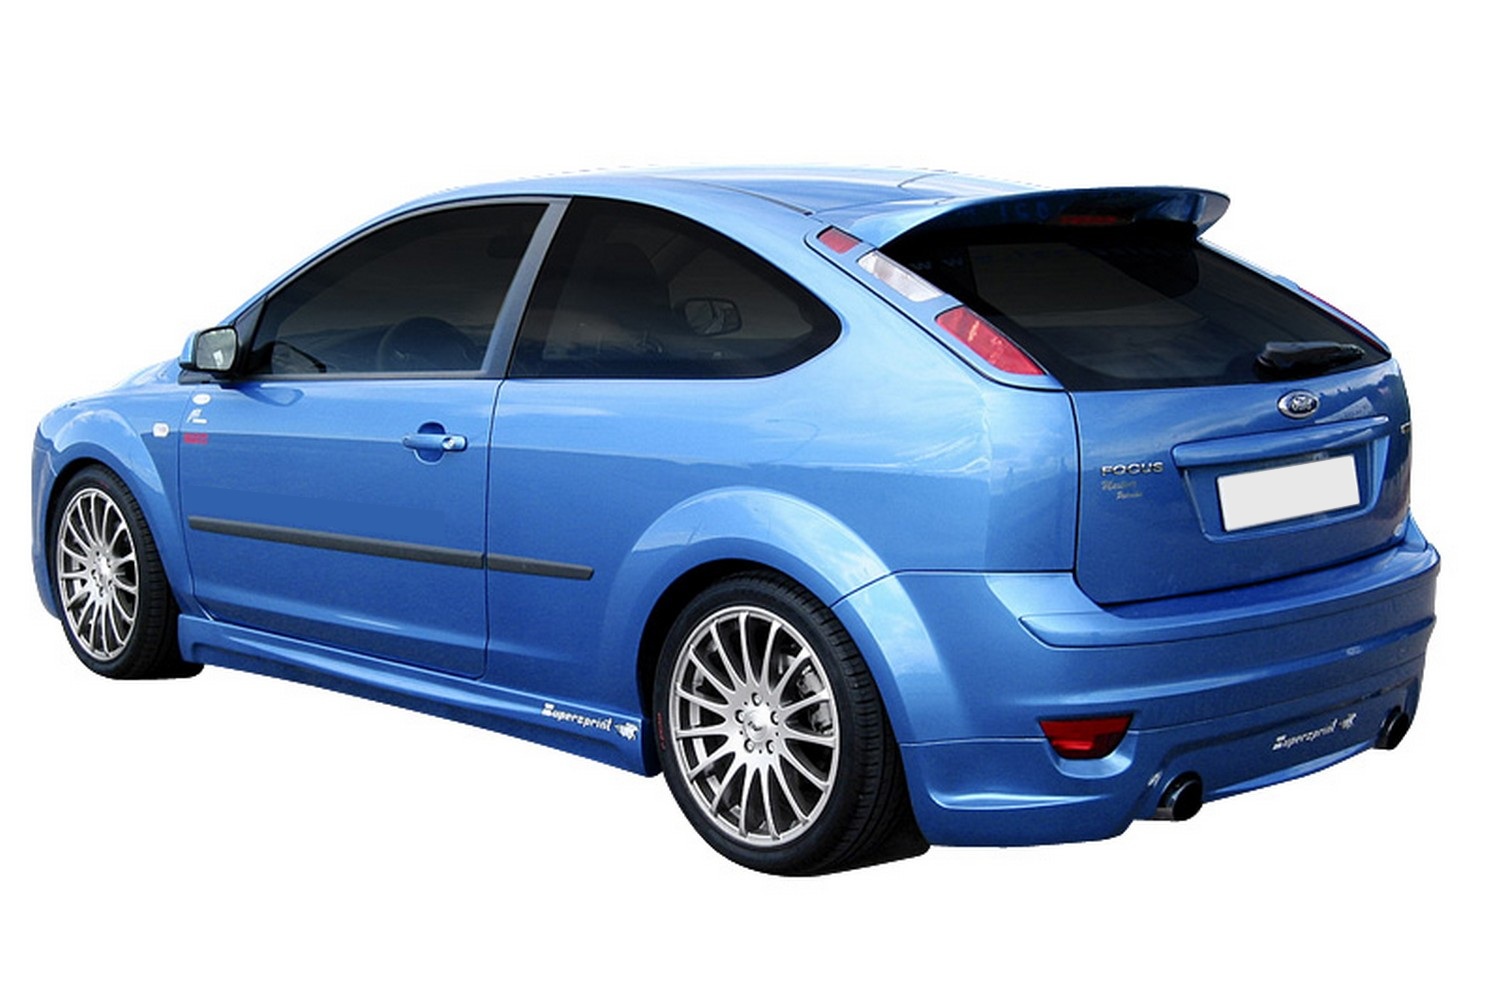 https://www.carparts-expert.com/images/stories/virtuemart/product/for5fosu-ford-focus-ii-2004-2010-5-door-hatchback-roof-spoiler-1.jpg